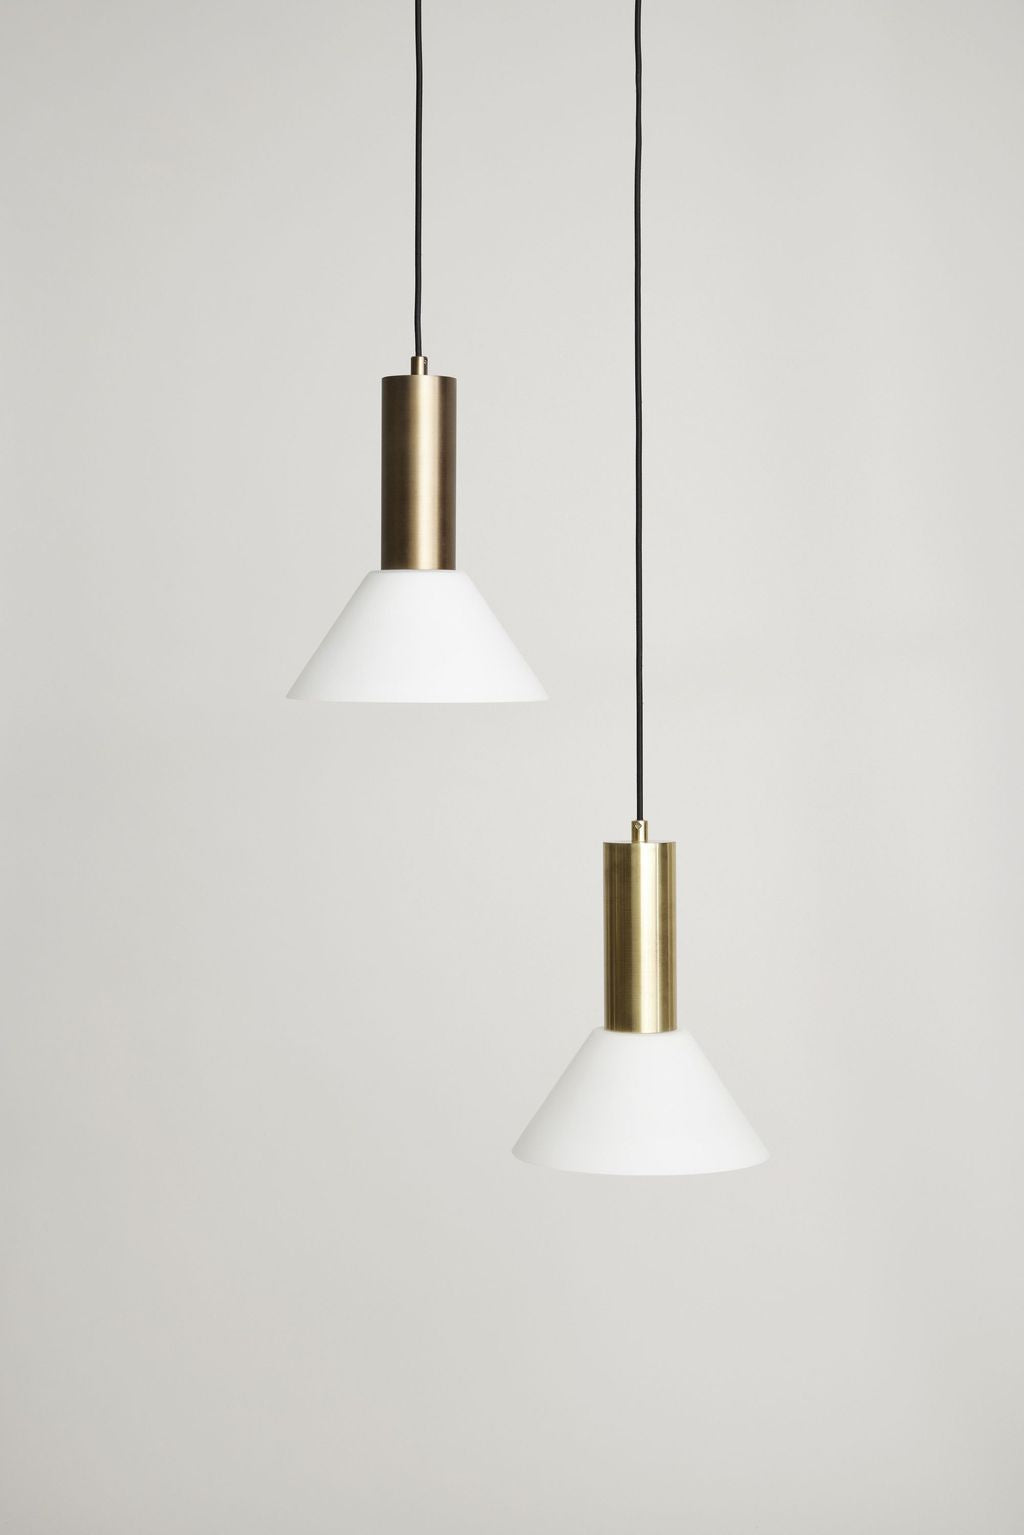 Hübsch kontrastní přívěsek /stropní lampa, mosaz